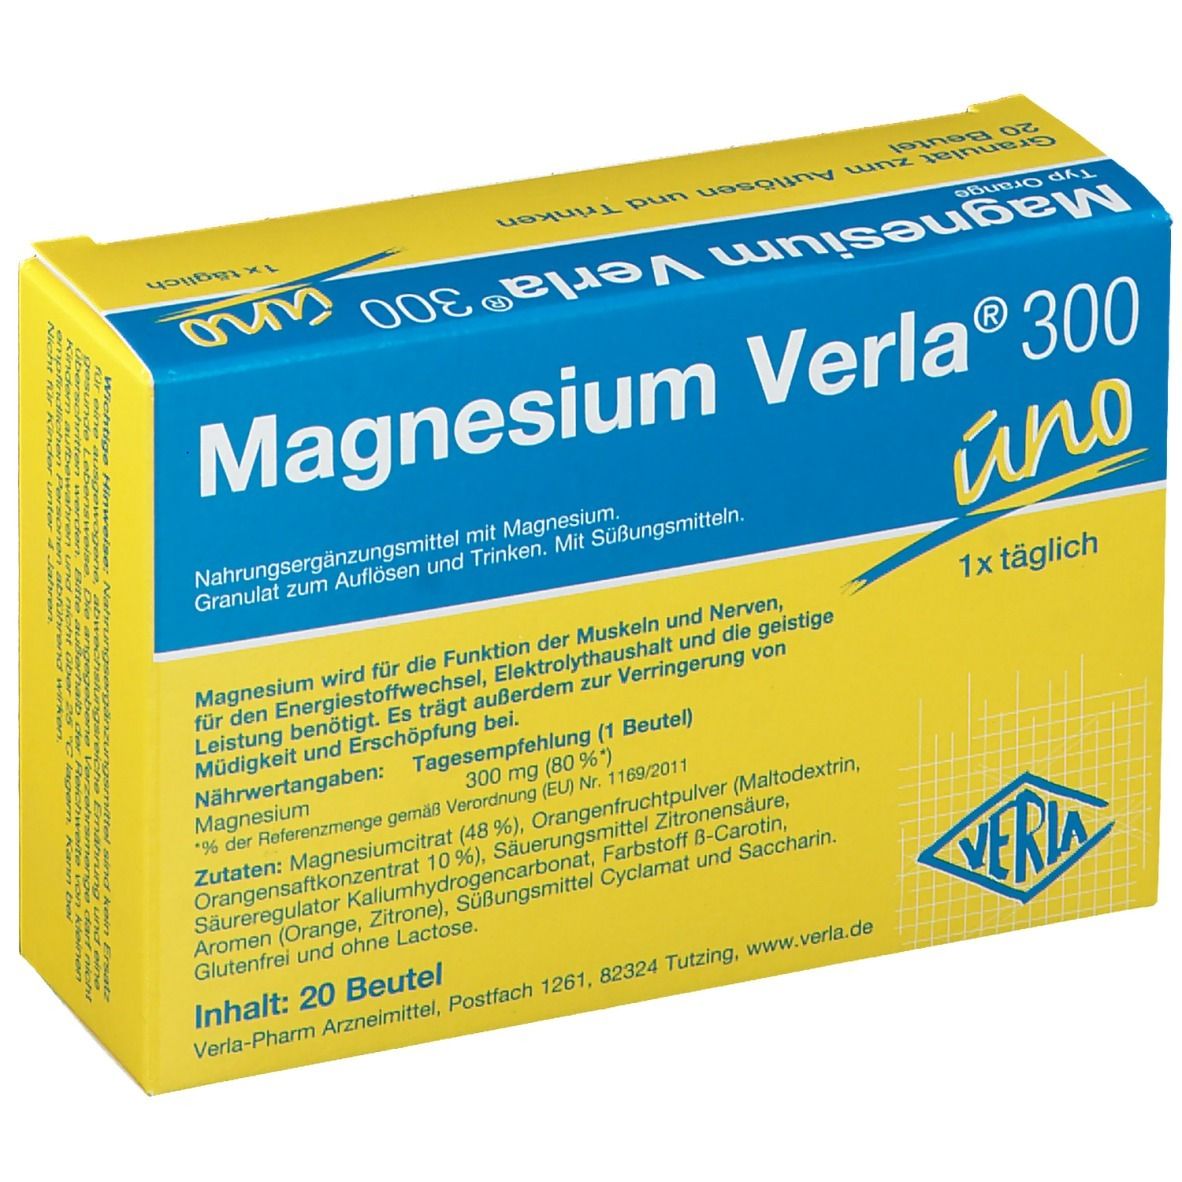 Magnesium Verla® 300 uno Orange